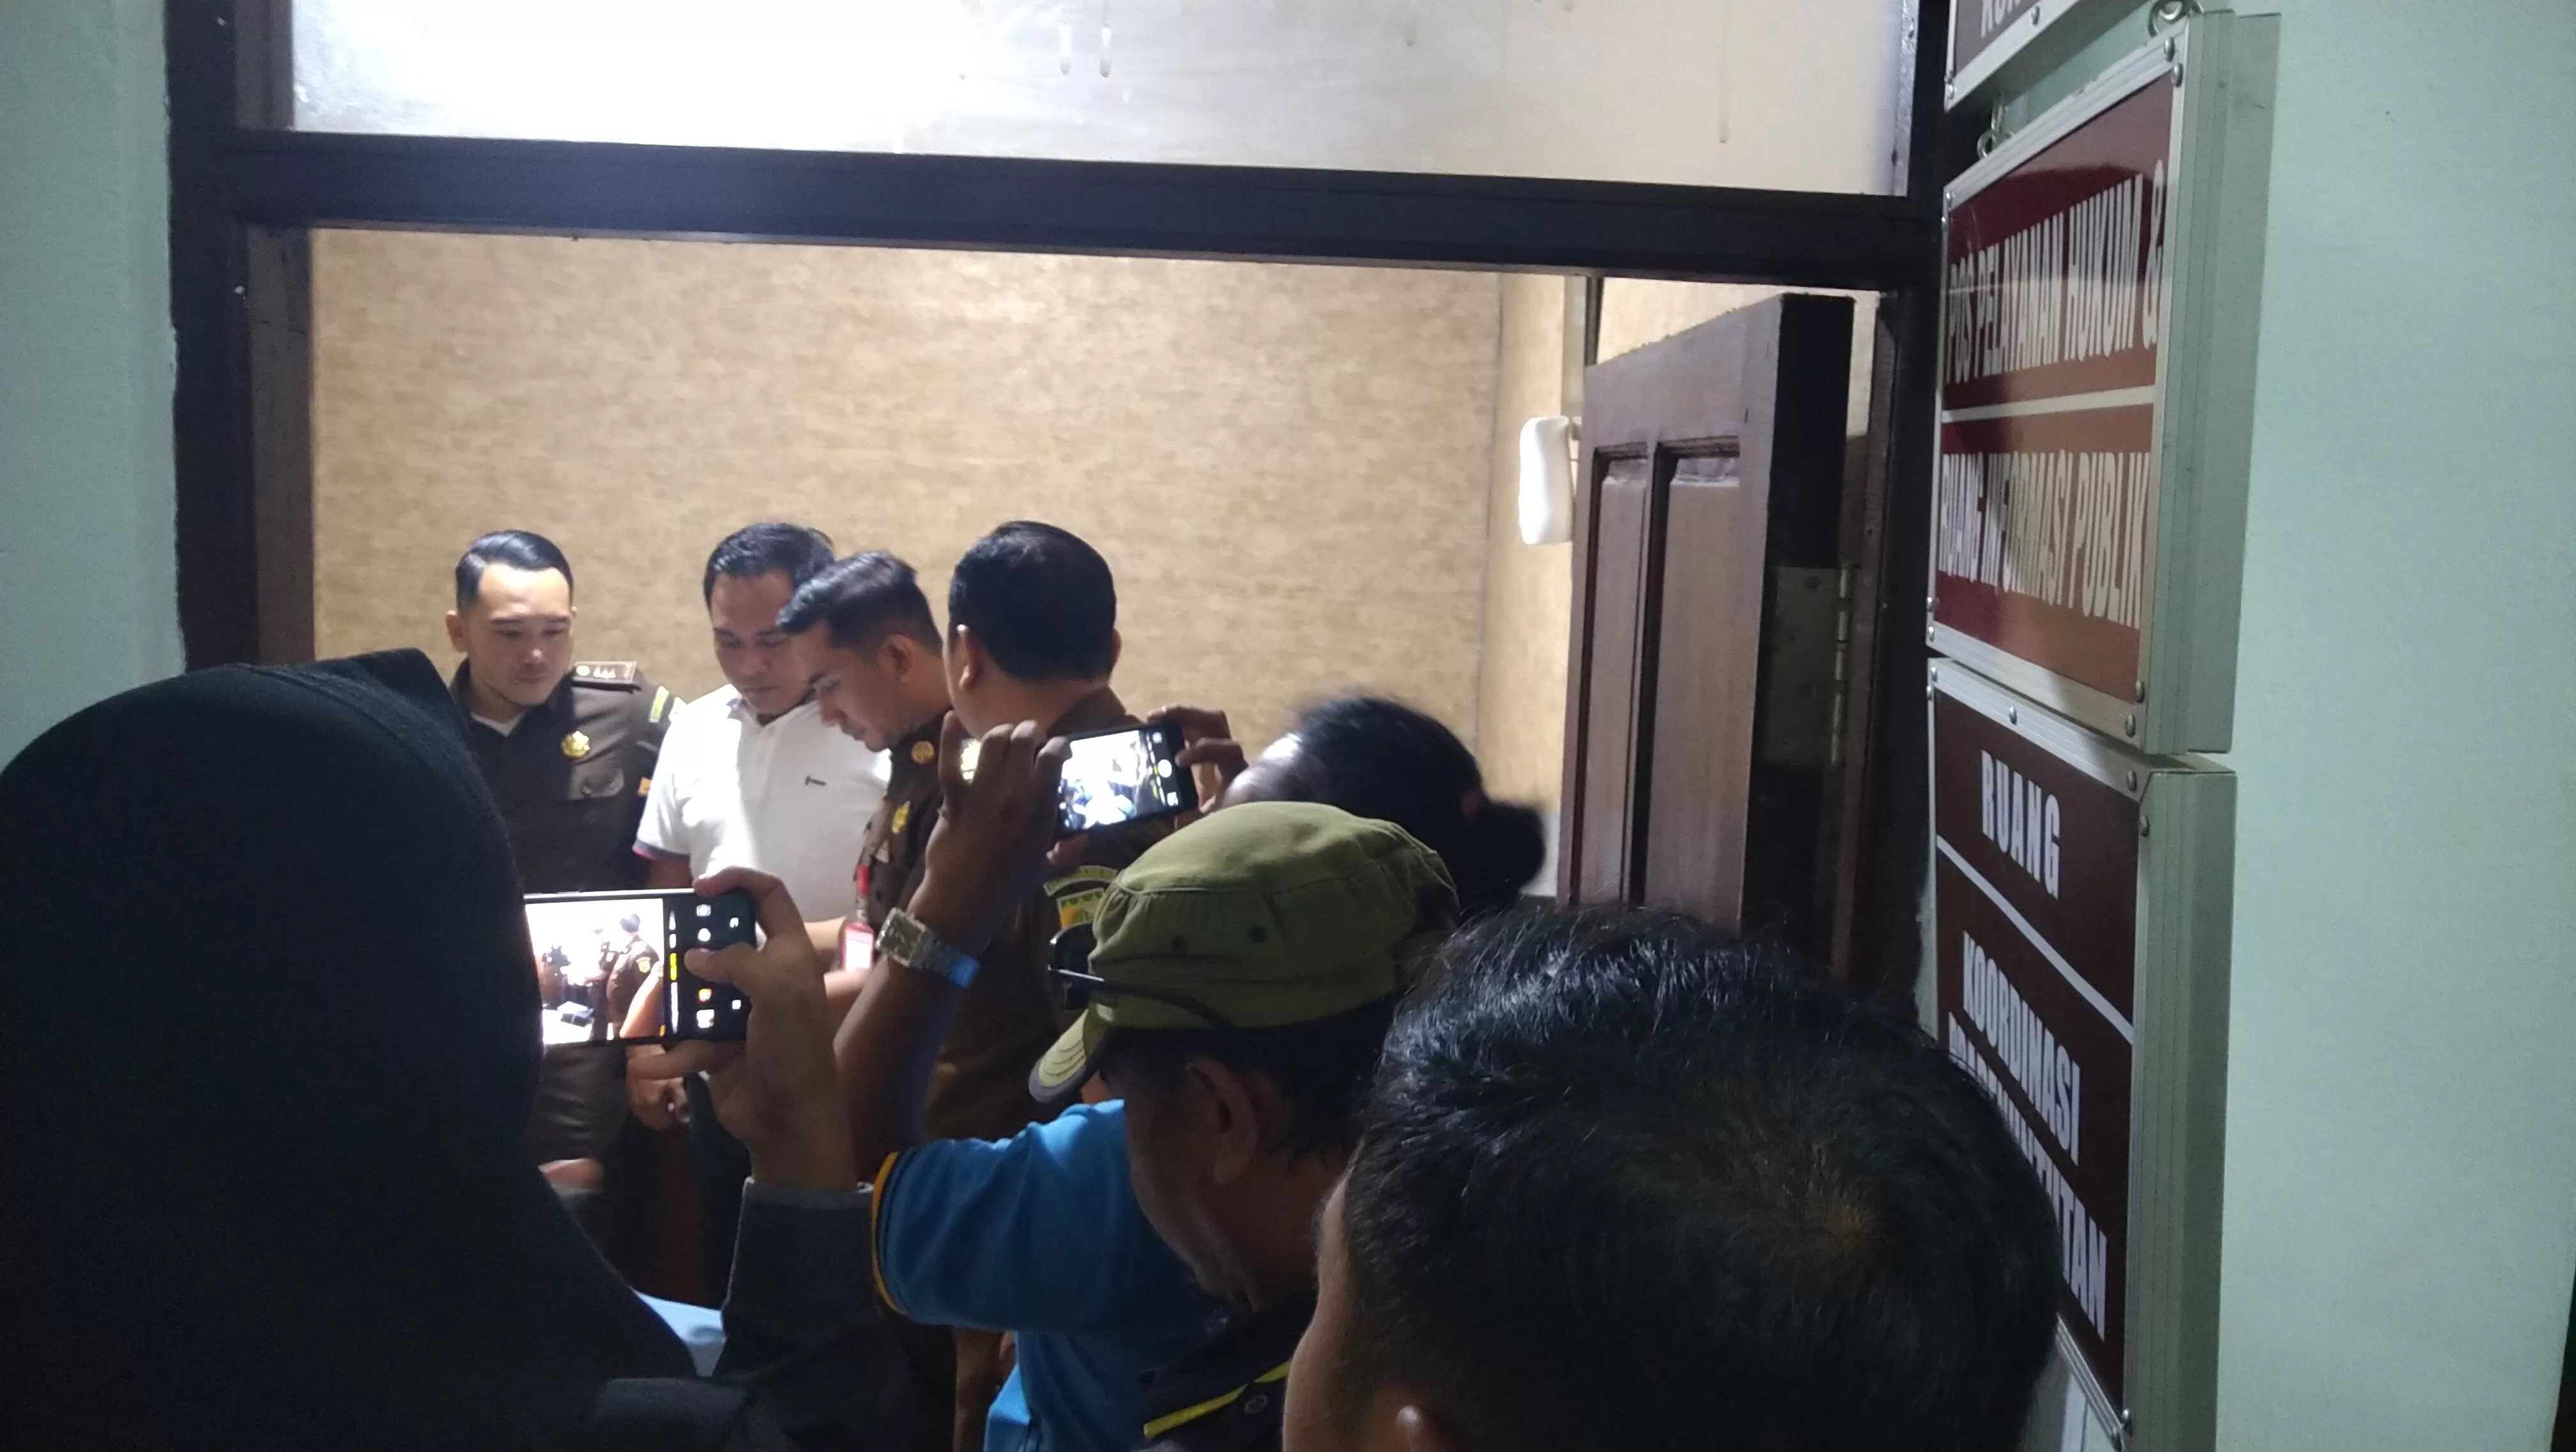 RAMPUNG: Unit Tipikor Polres Kotabaru menyerahkan berkas kasus dugaan korupsi Kades Tata Mekar ke Kejari Kotabaru, Kamis (13/2) kemarin. | FOTO: ZALYAN SHODIQIN ABDI/RADAR BANJARMASIN